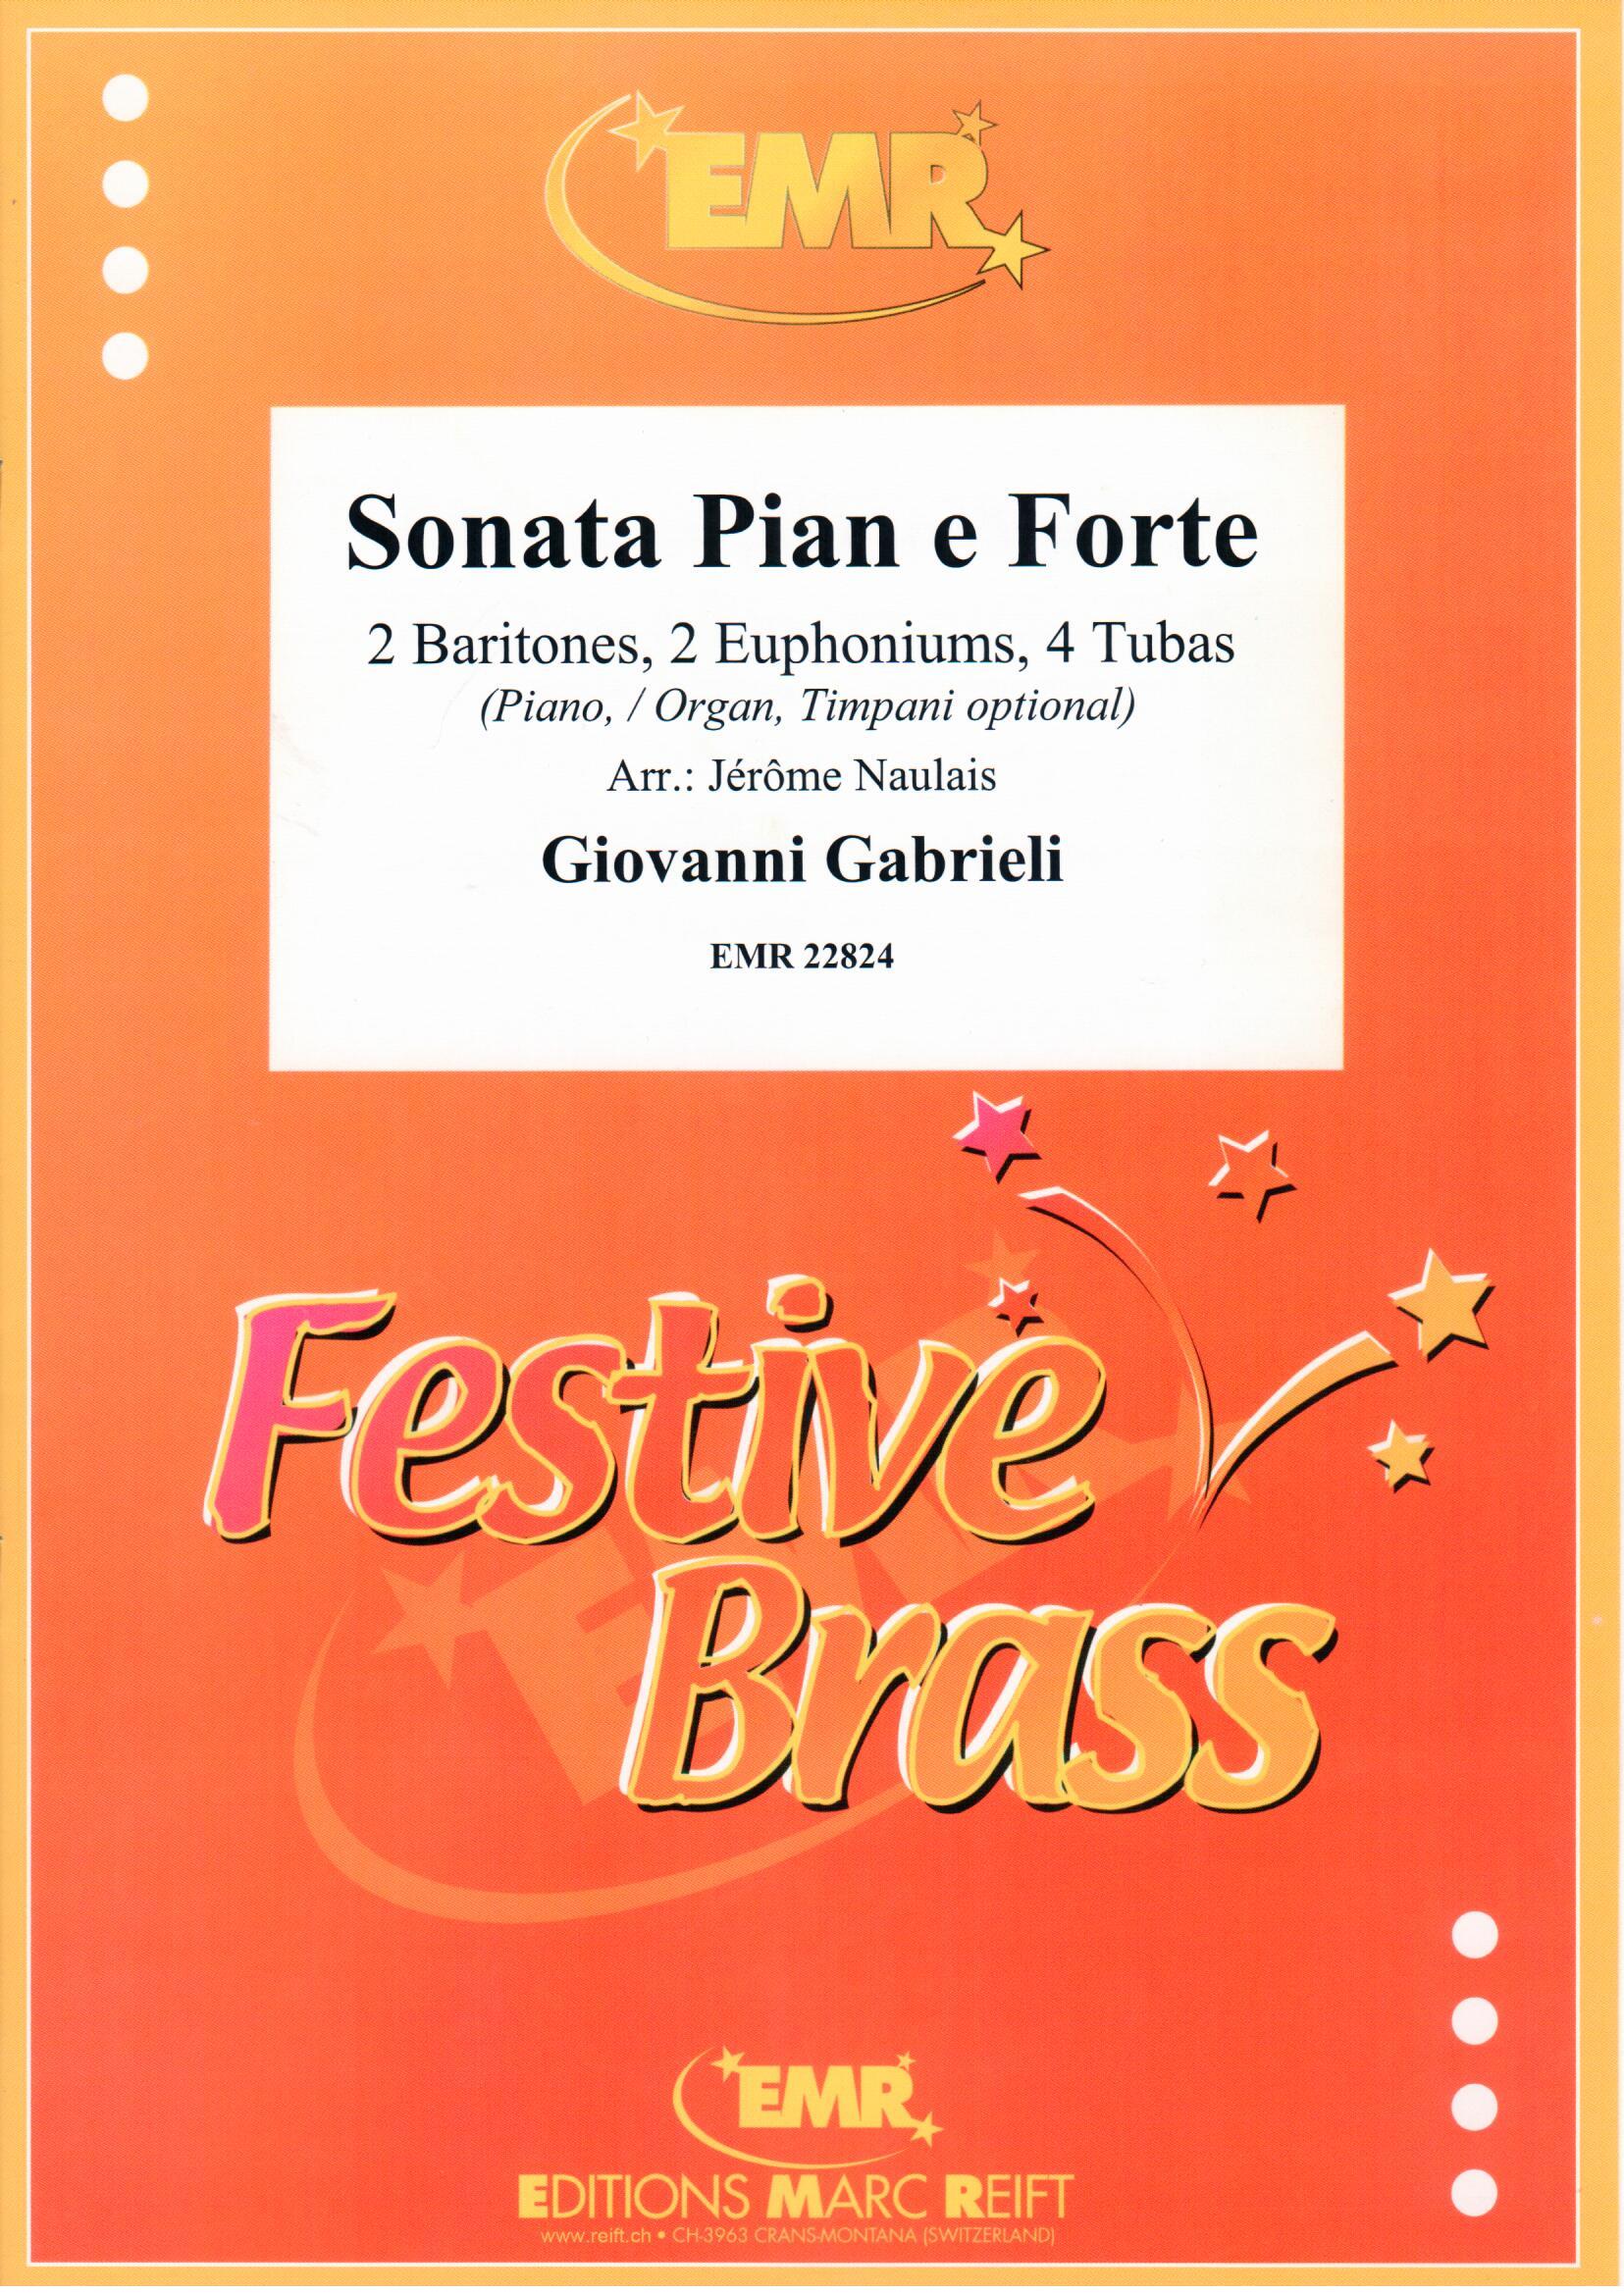 SONATA PIAN E FORTE, Large Brass Ensemble